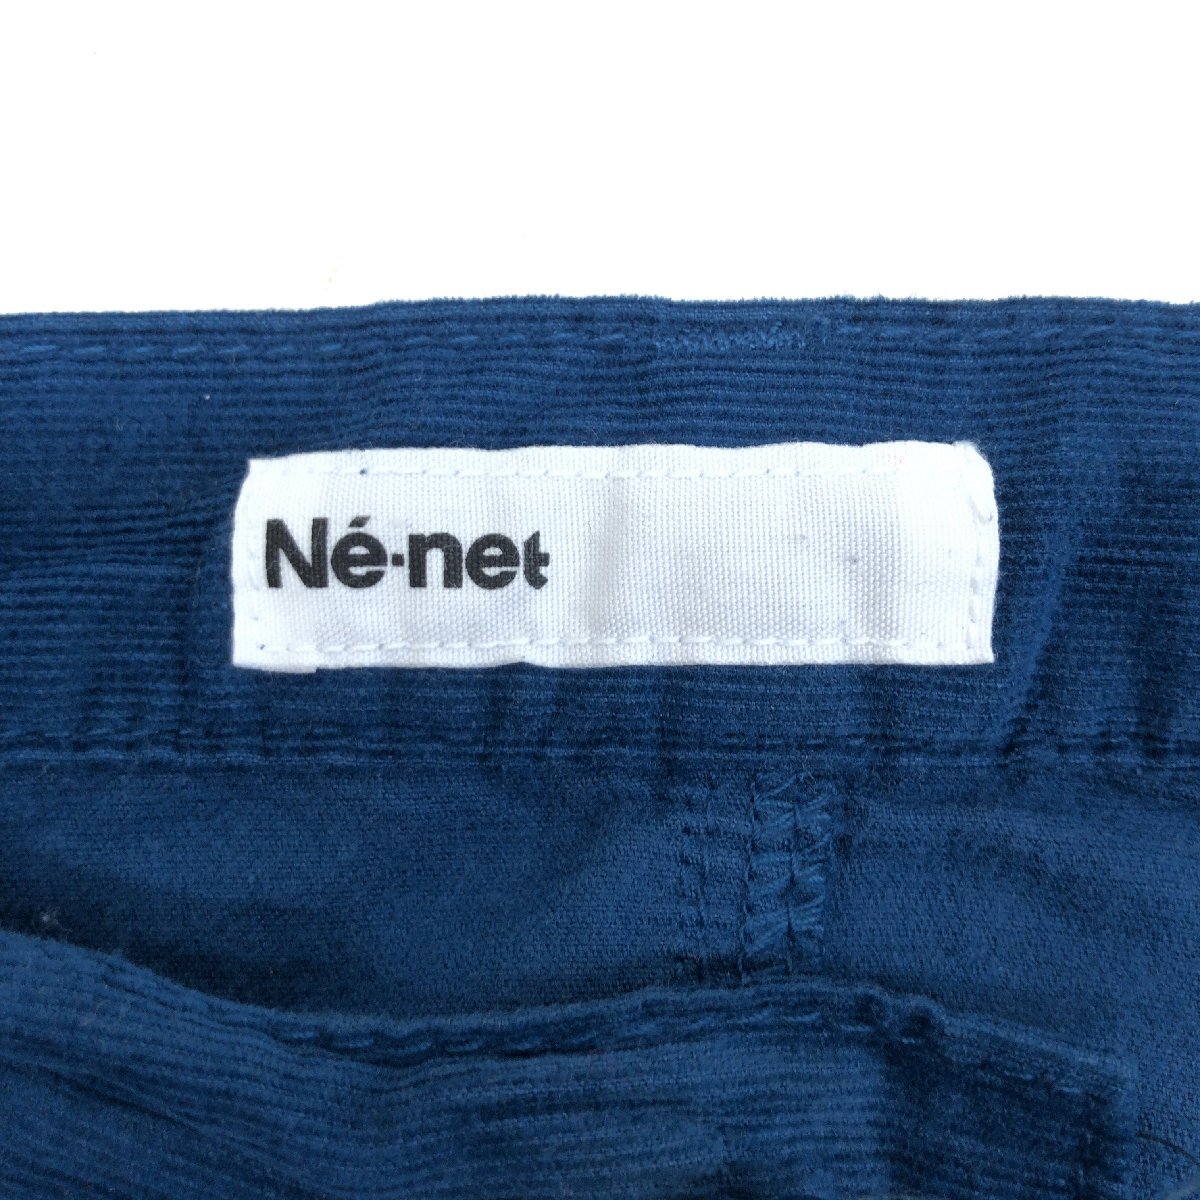 Ne-net Ne-Net животное вышивка вельвет шаровары 2(L соответствует ) w80 темно синий темно-синий широкий брюки шт .. дизайн внутренний стандартный товар женский 